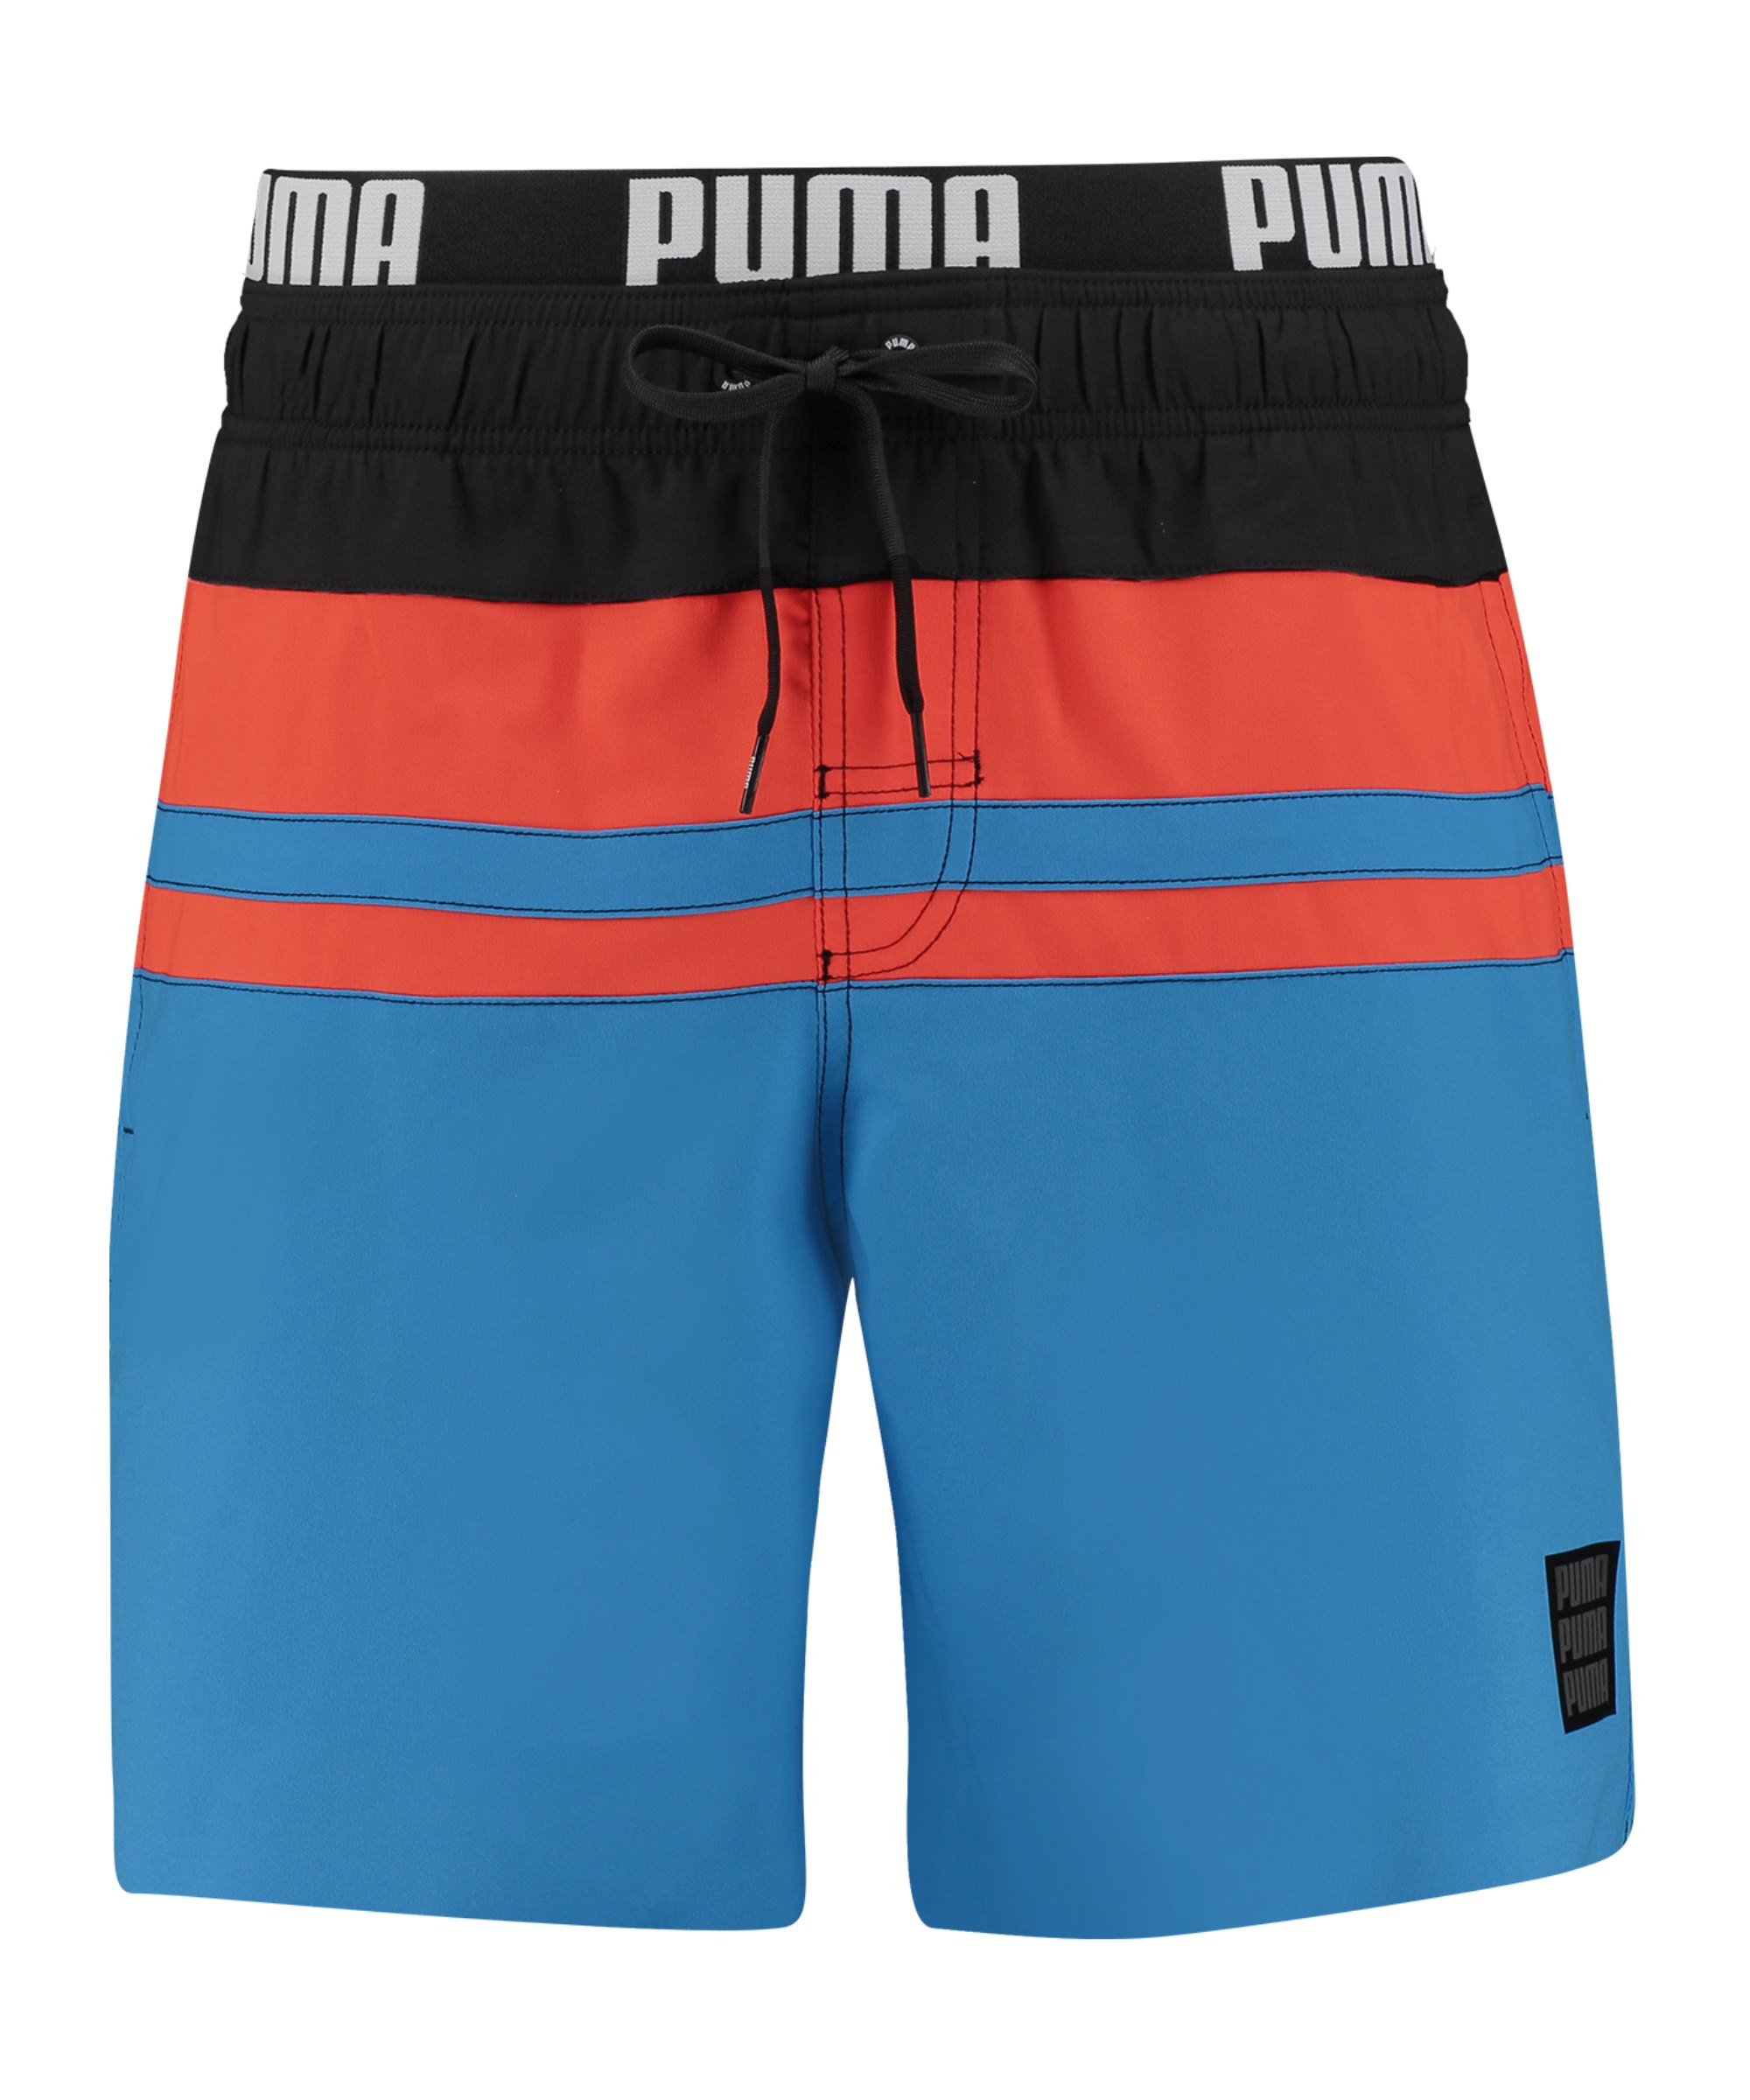 PUMA Swim Heritage Stripe Mid Badehose Blau F002 - blau